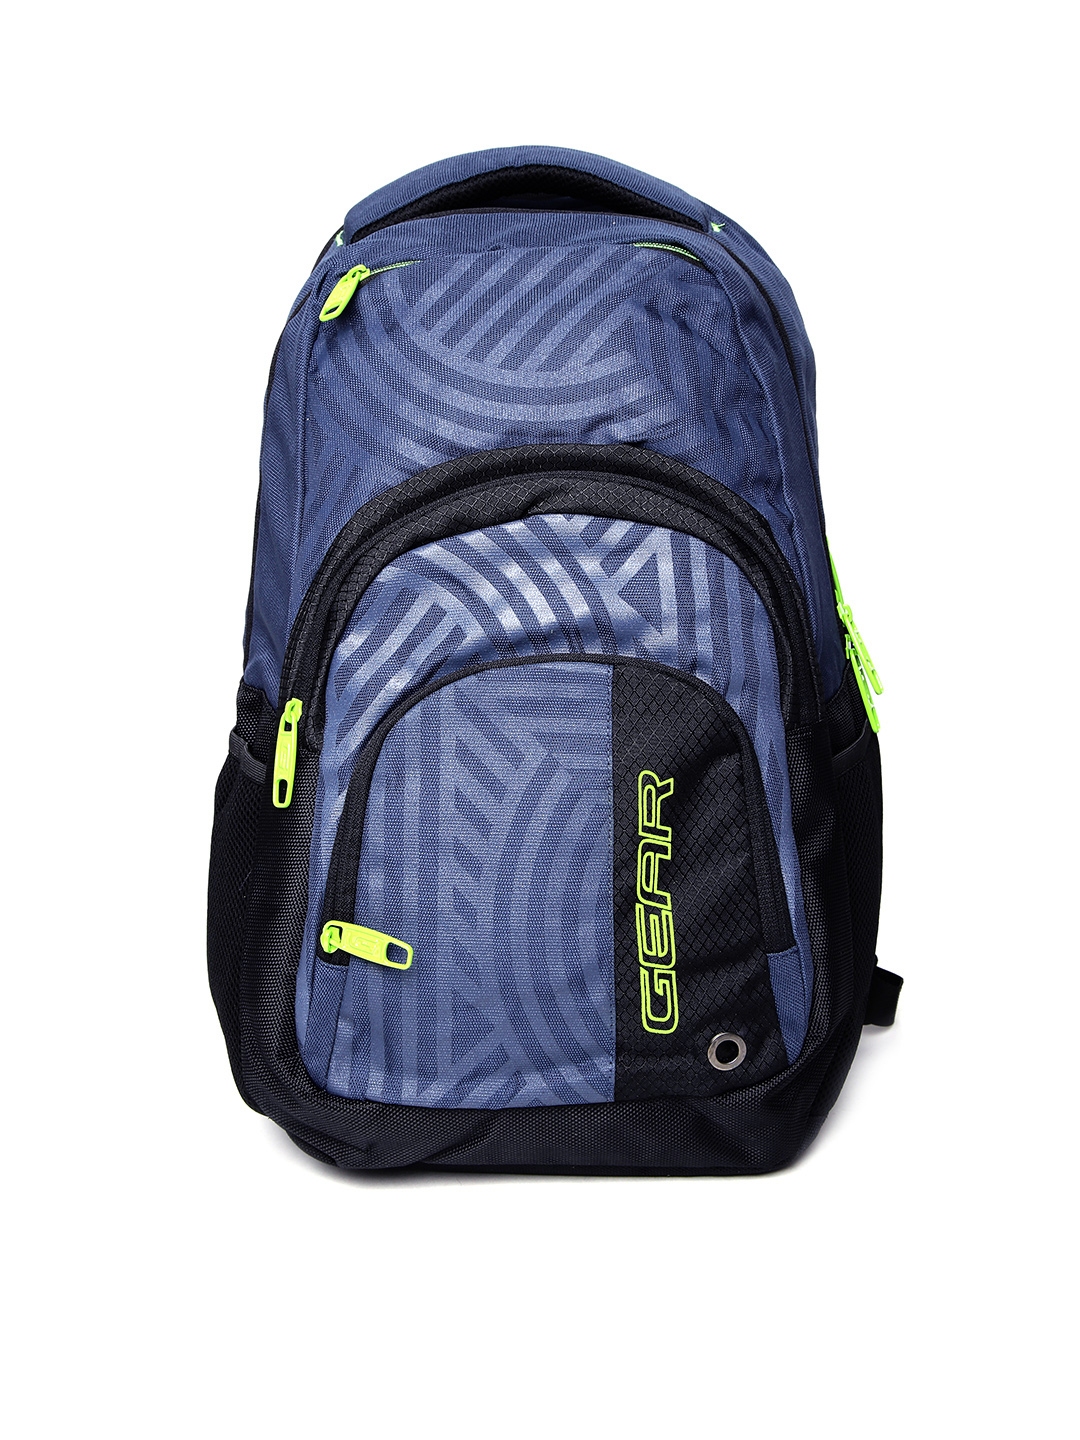 Buy Gear Unisex Blue Climber Laptop Backpack - Backpacks for Unisex ...